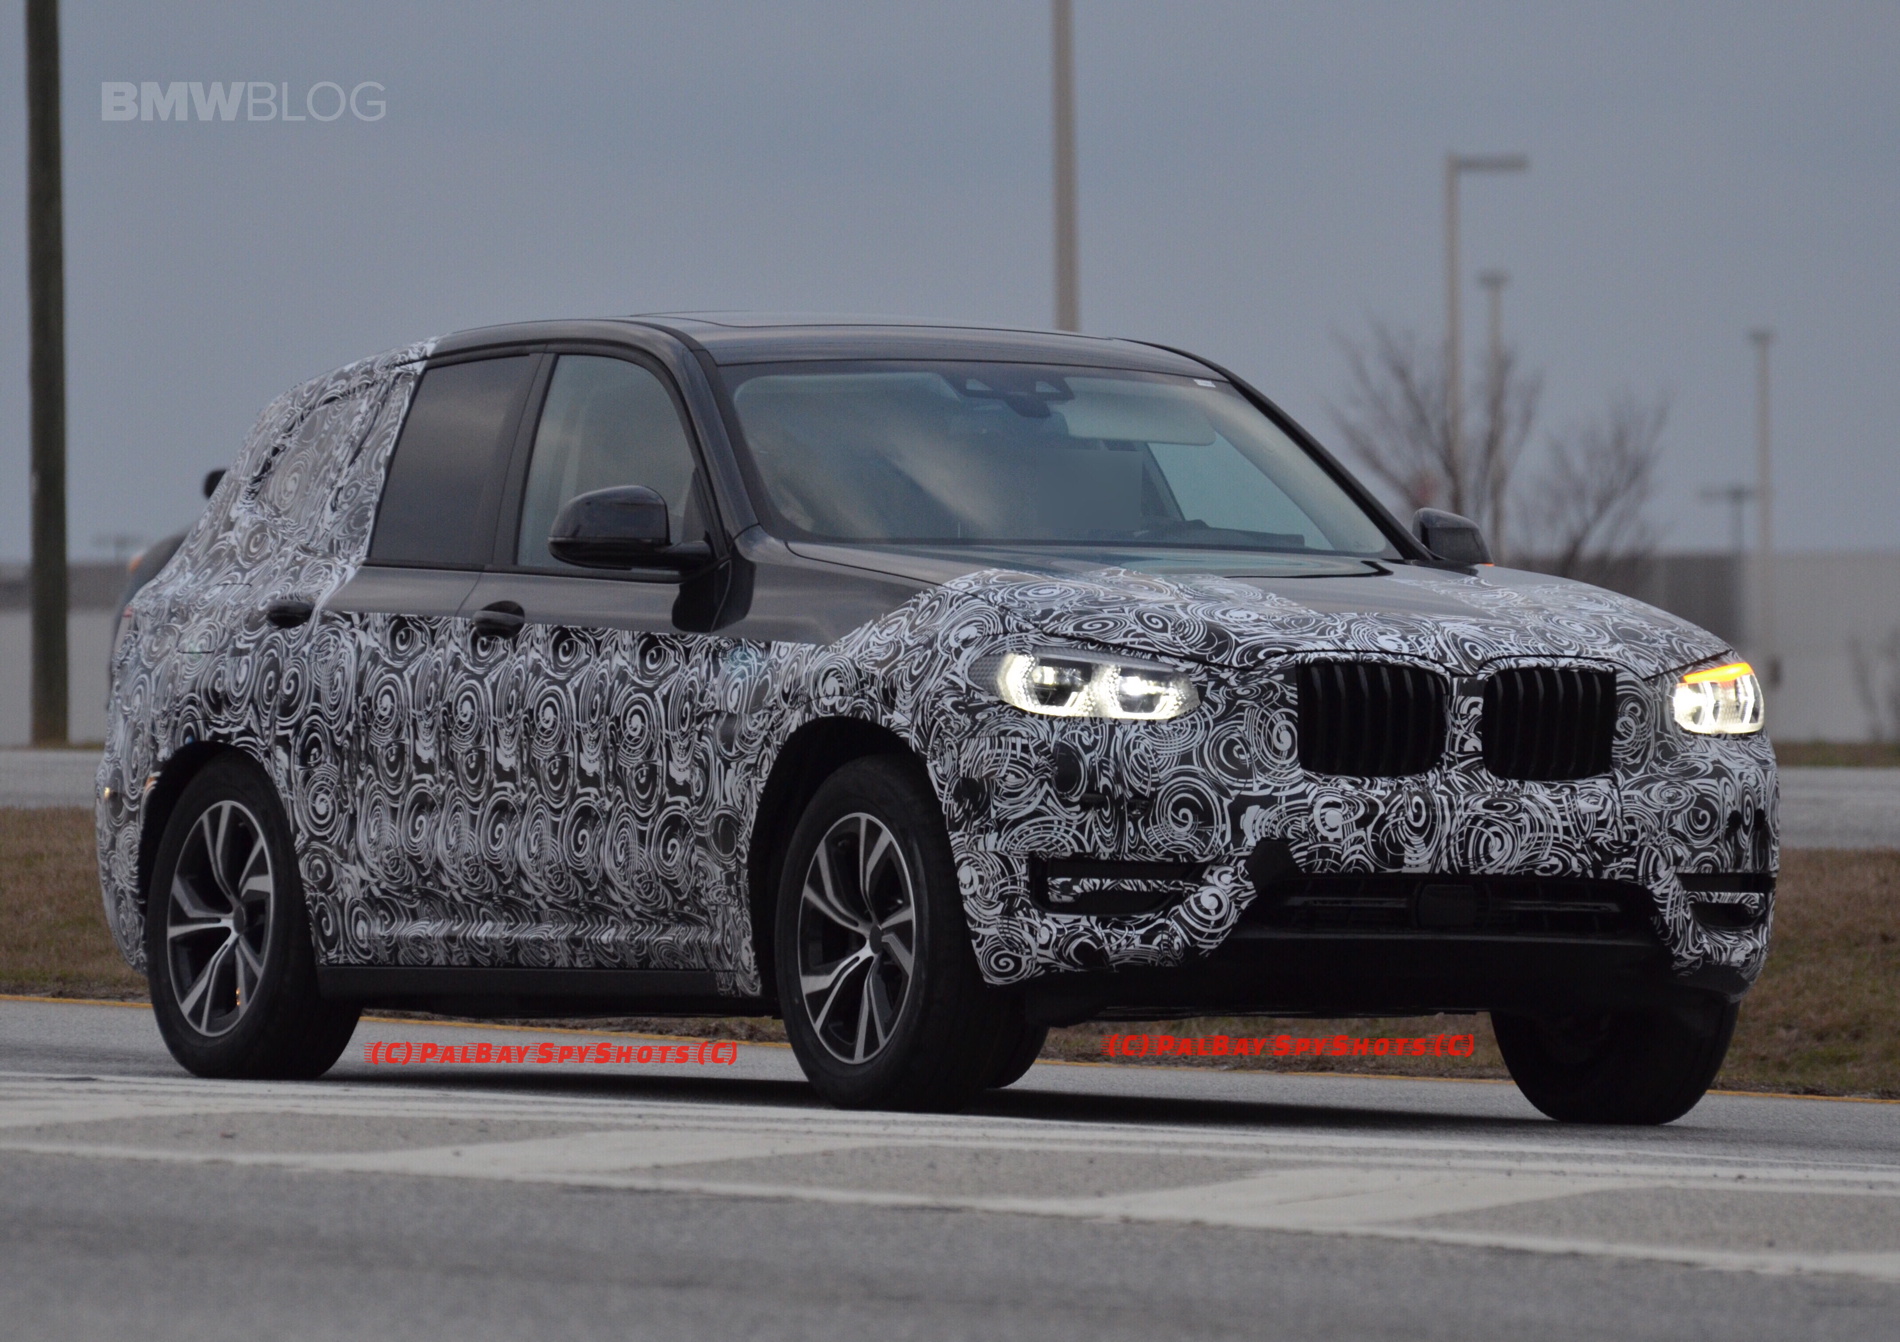 "صور تجسسية" أثناء اختبار الجيل القادم من "بي إم دبليو" X3 بعجلات جديدة BMW X3 2018 1